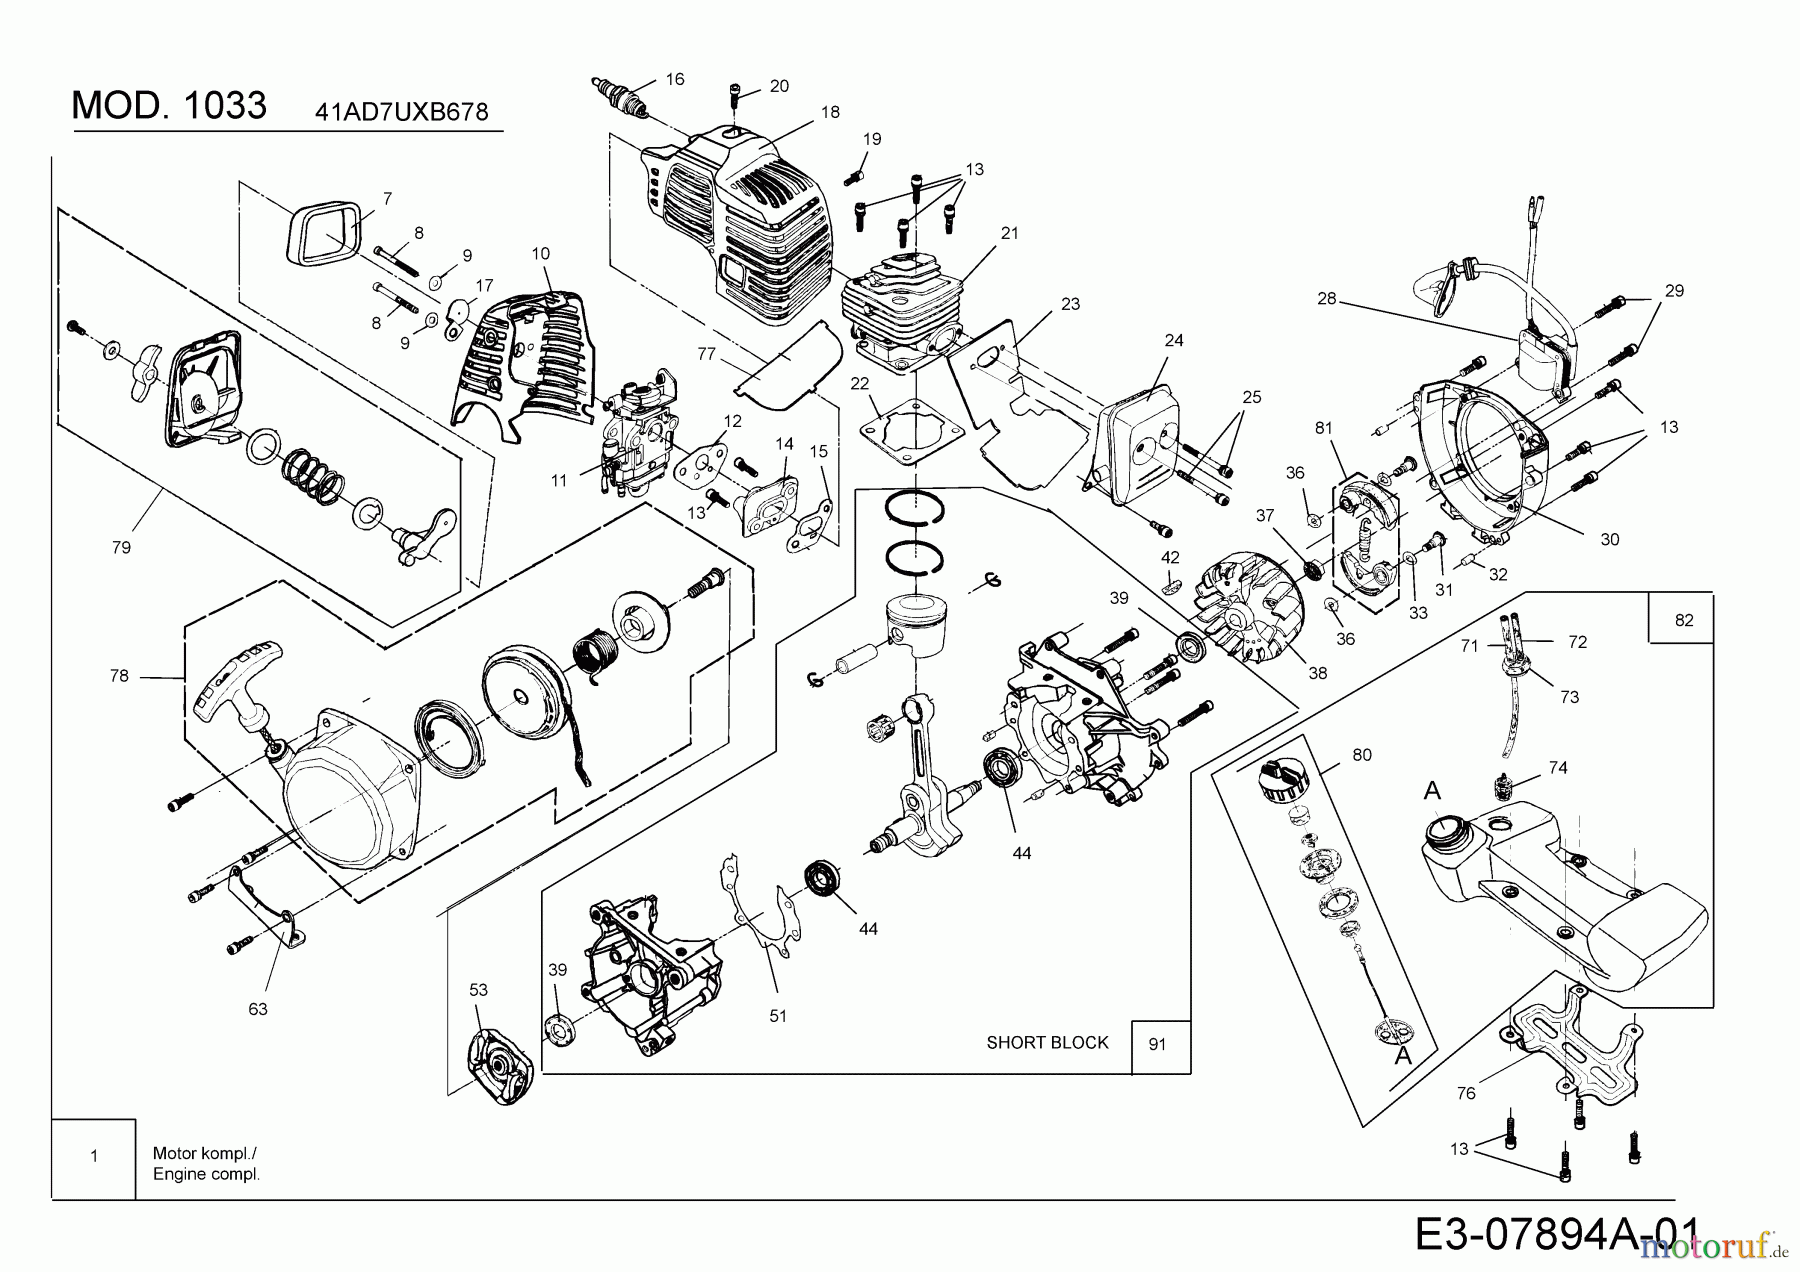  MTD Motorsensen 1033 41AD7UXB678  (2017) Motor